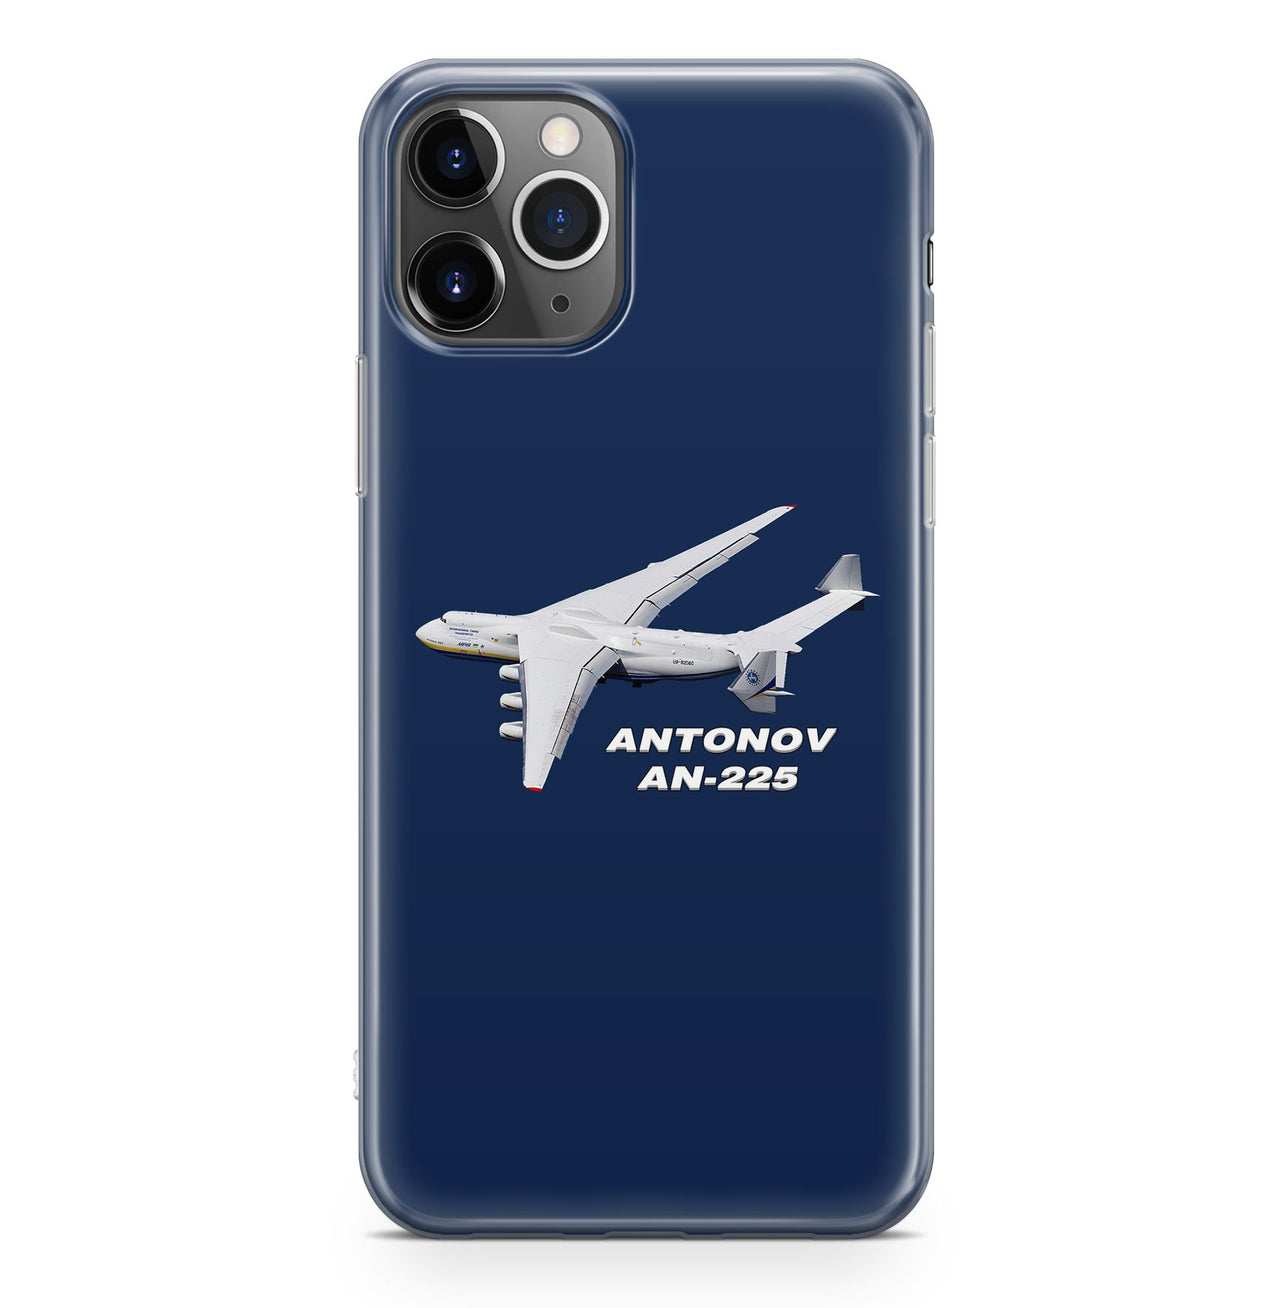 Antonov AN-225 (10) Designed iPhone Cases